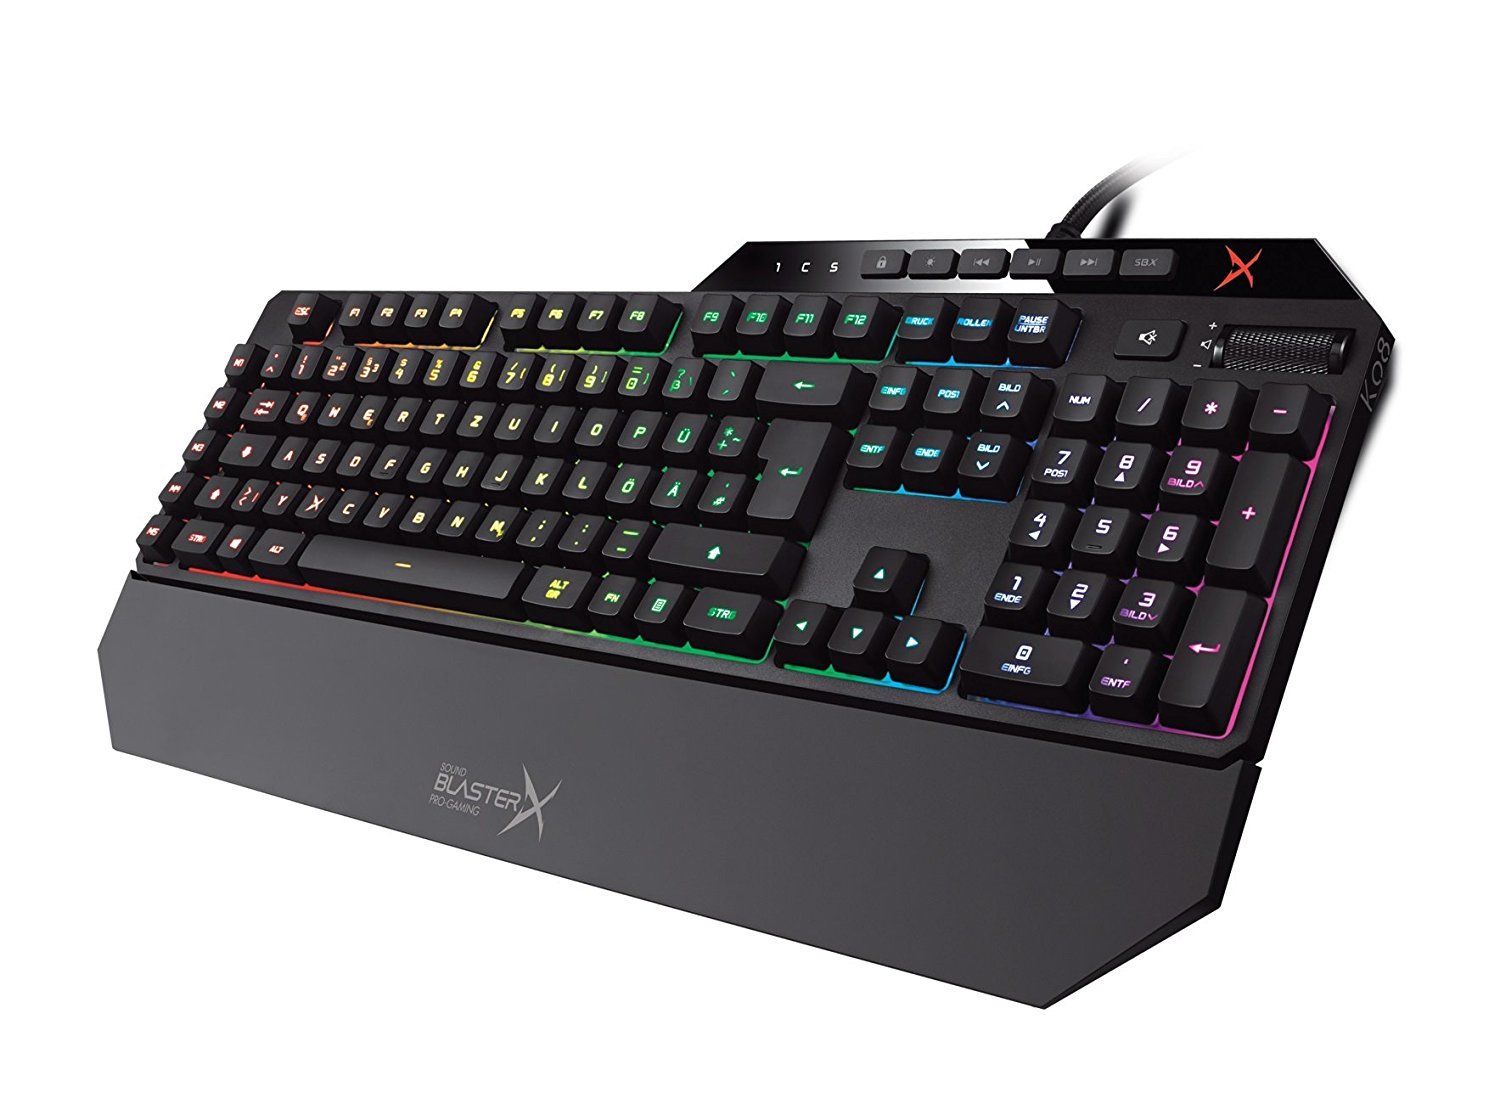 Bild zu Gaming Tastatur Creative Vanguard K08 RGB für 59,99€ (Vergleich: 73,89€)